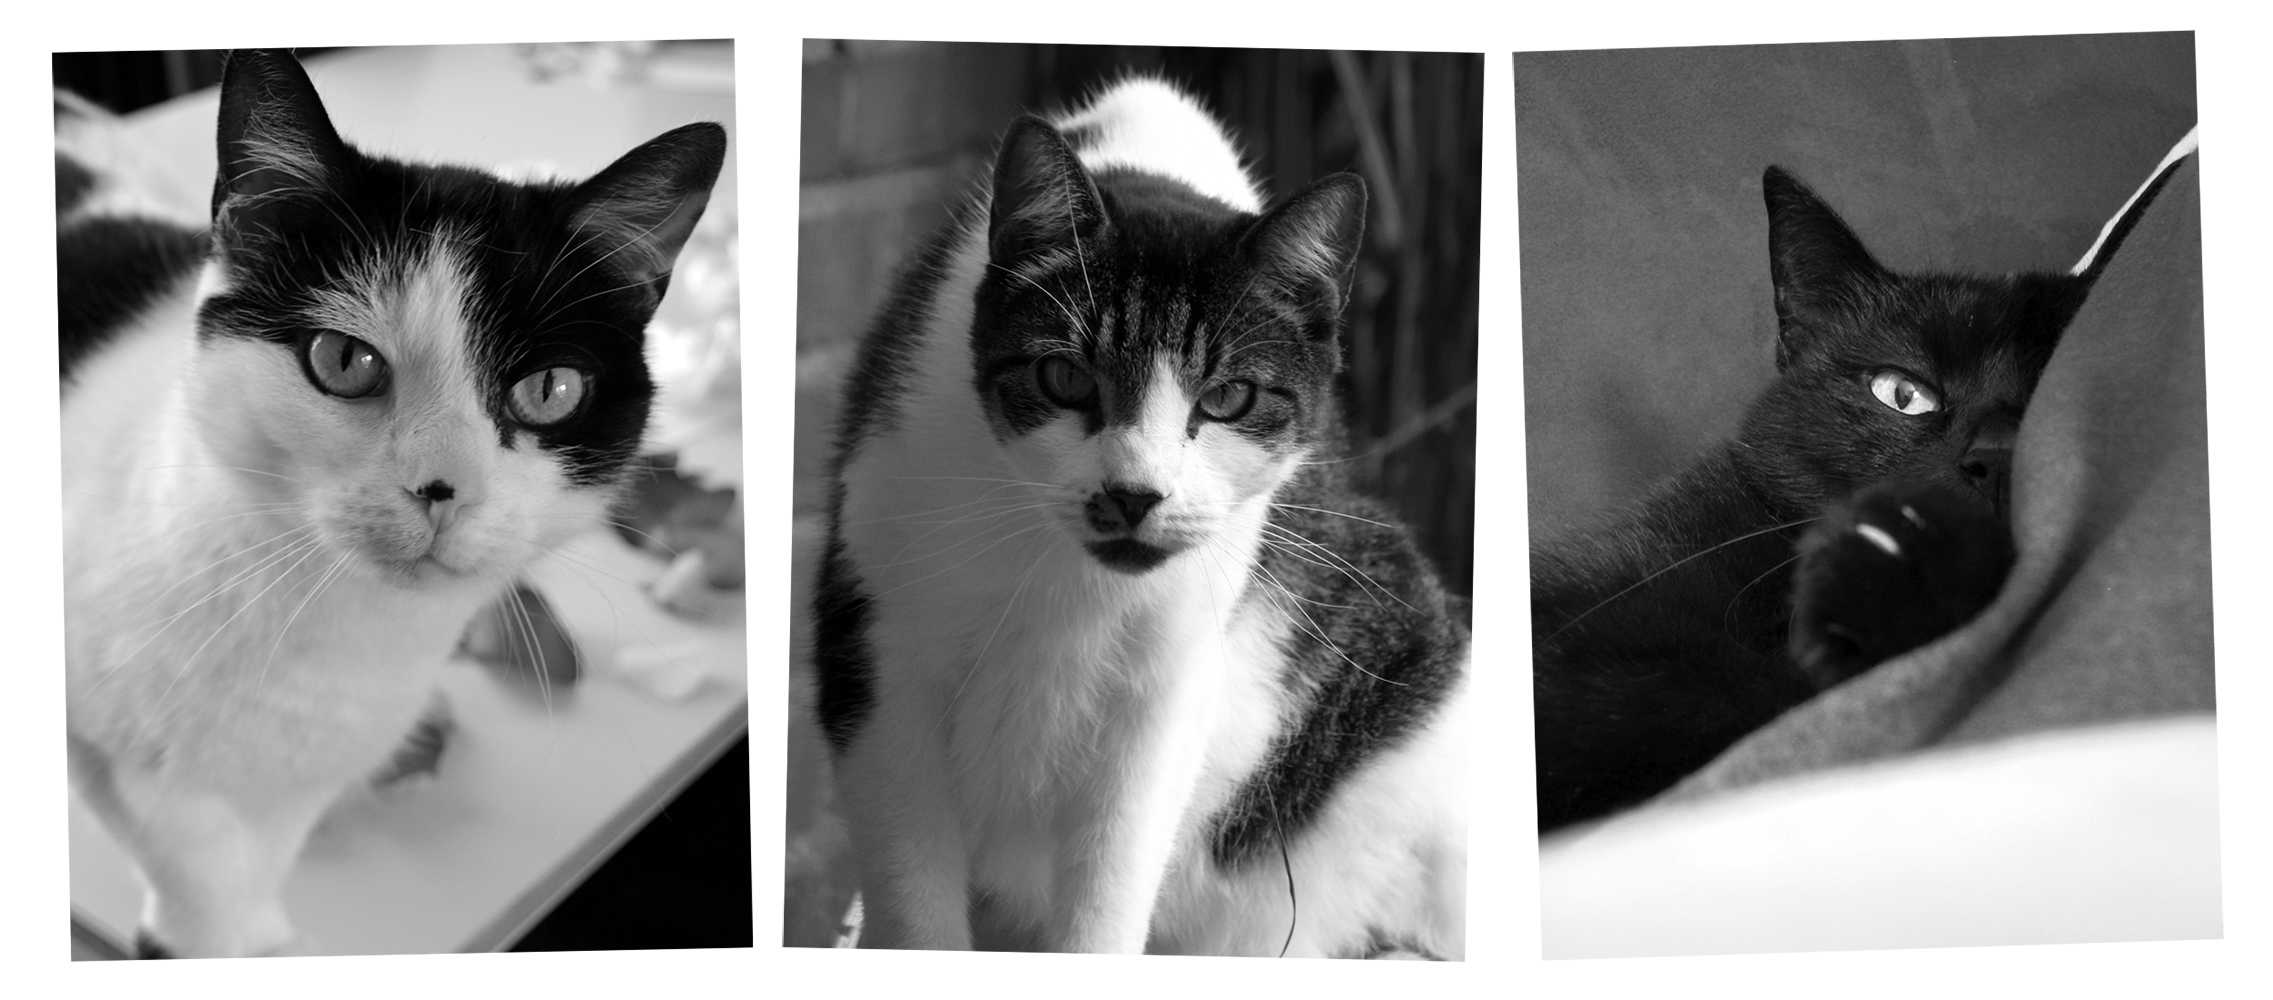 Cats of Jenny Bommert: Beebiepoes, Claudius, Moritz